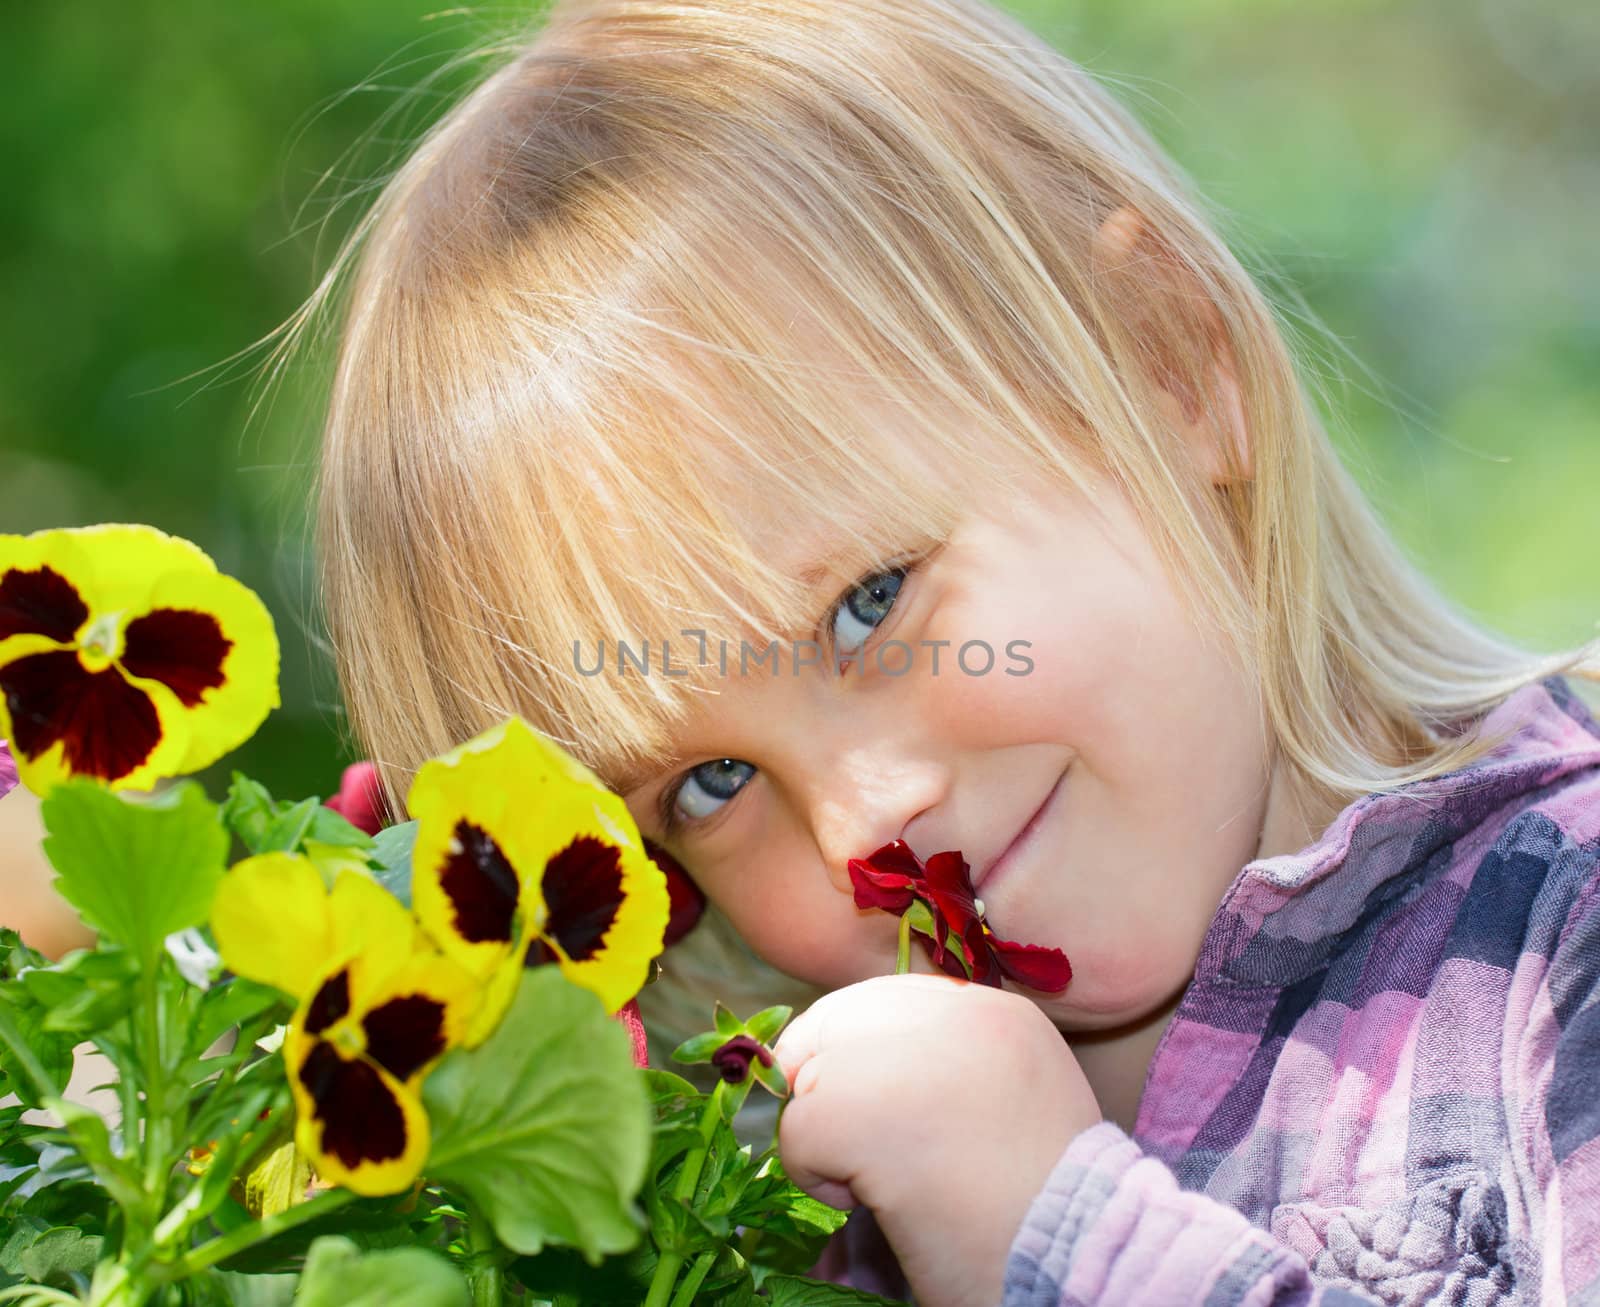 Little girl smelling flowers in a garden